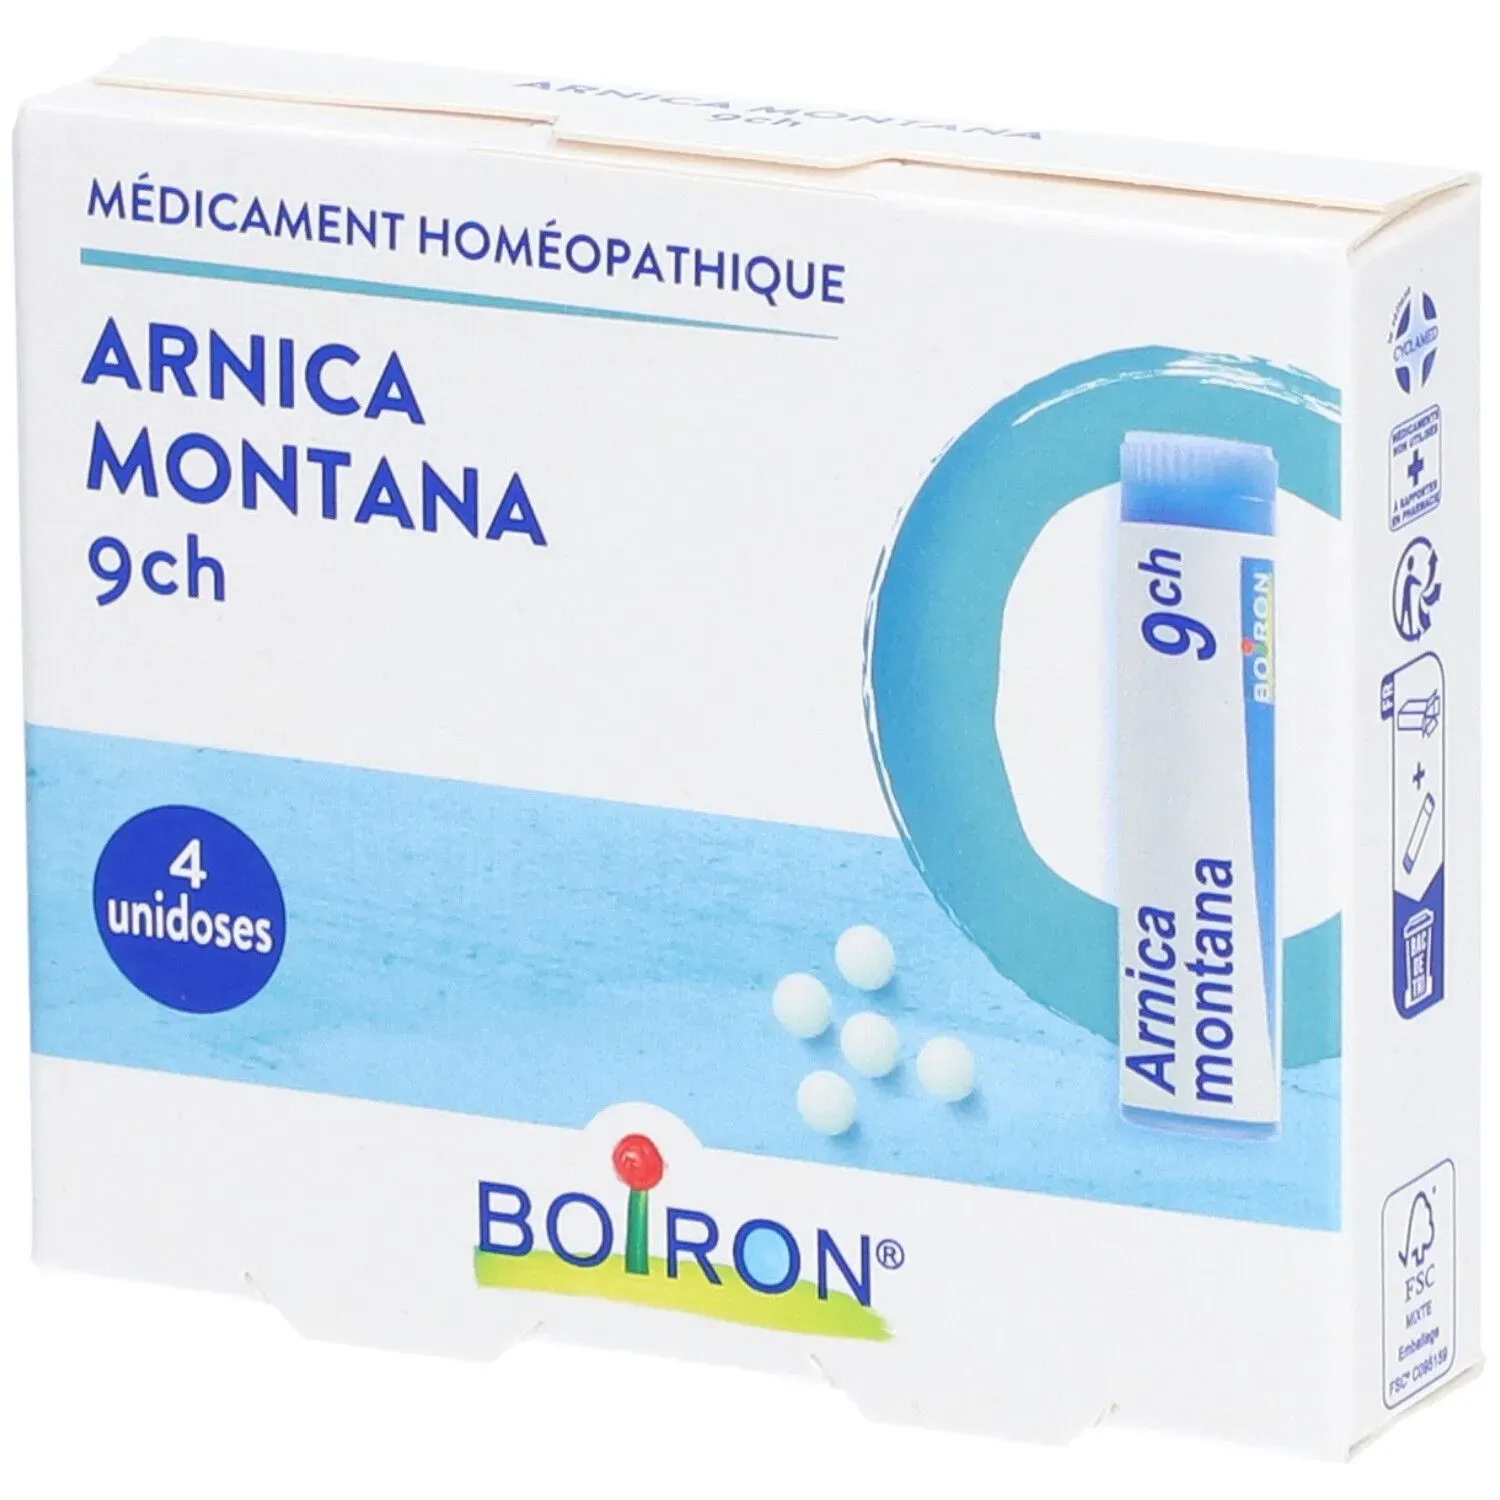 ARNICA MONTANA BOIRON 9 CH pack de 4 doses 4 pc(s) globule(s) homéopathique(s)